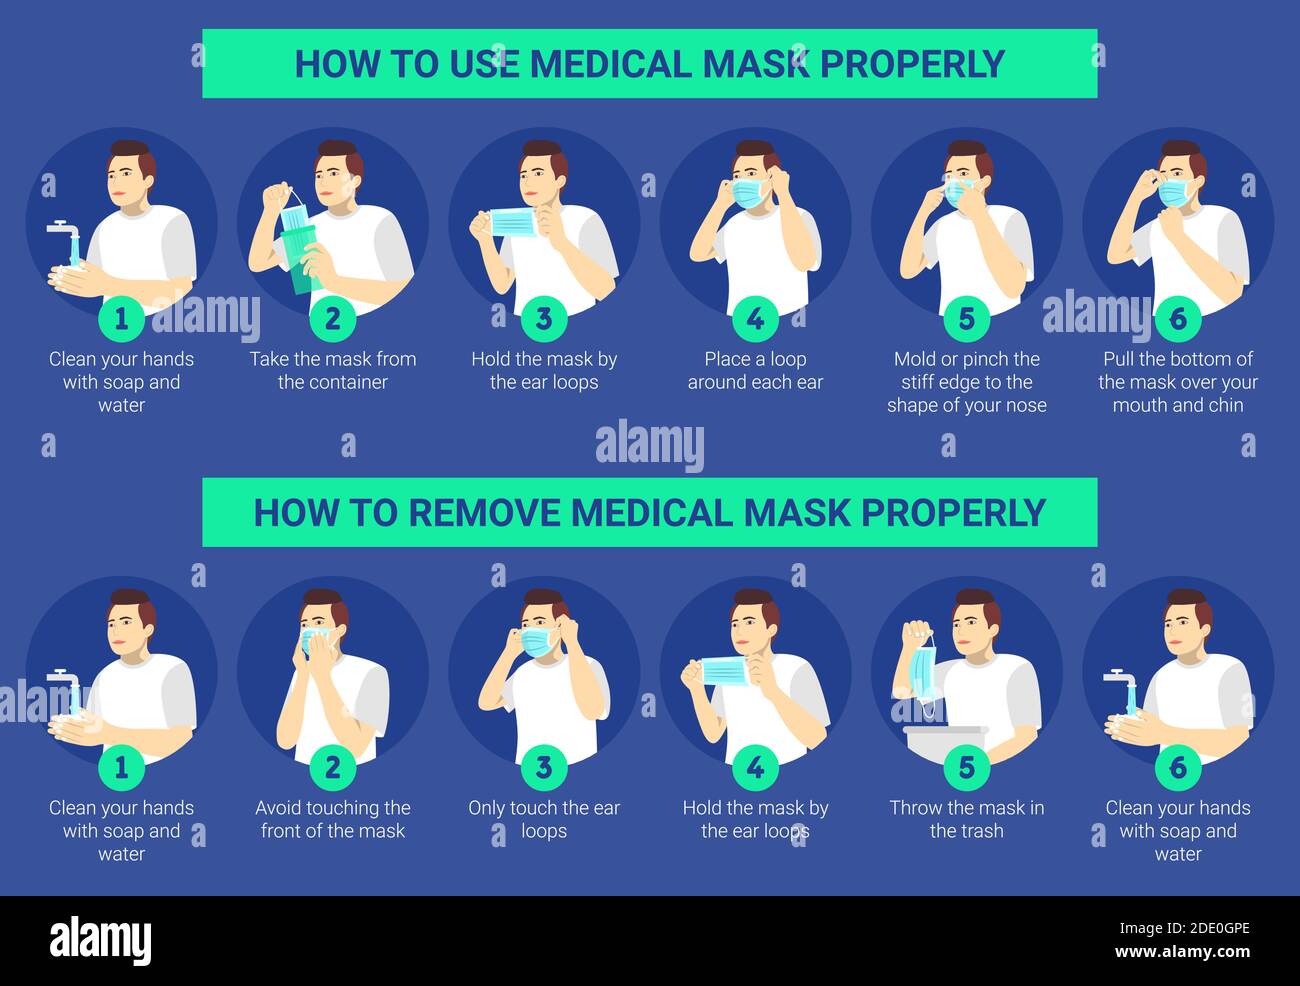 Come usare e rimuovere correttamente una maschera chirurgica per prevenire il virus. Illustrazione di un uomo che presenta passo dopo passo come utilizzare e rimuovere una maschera chirurgica co Illustrazione Vettoriale